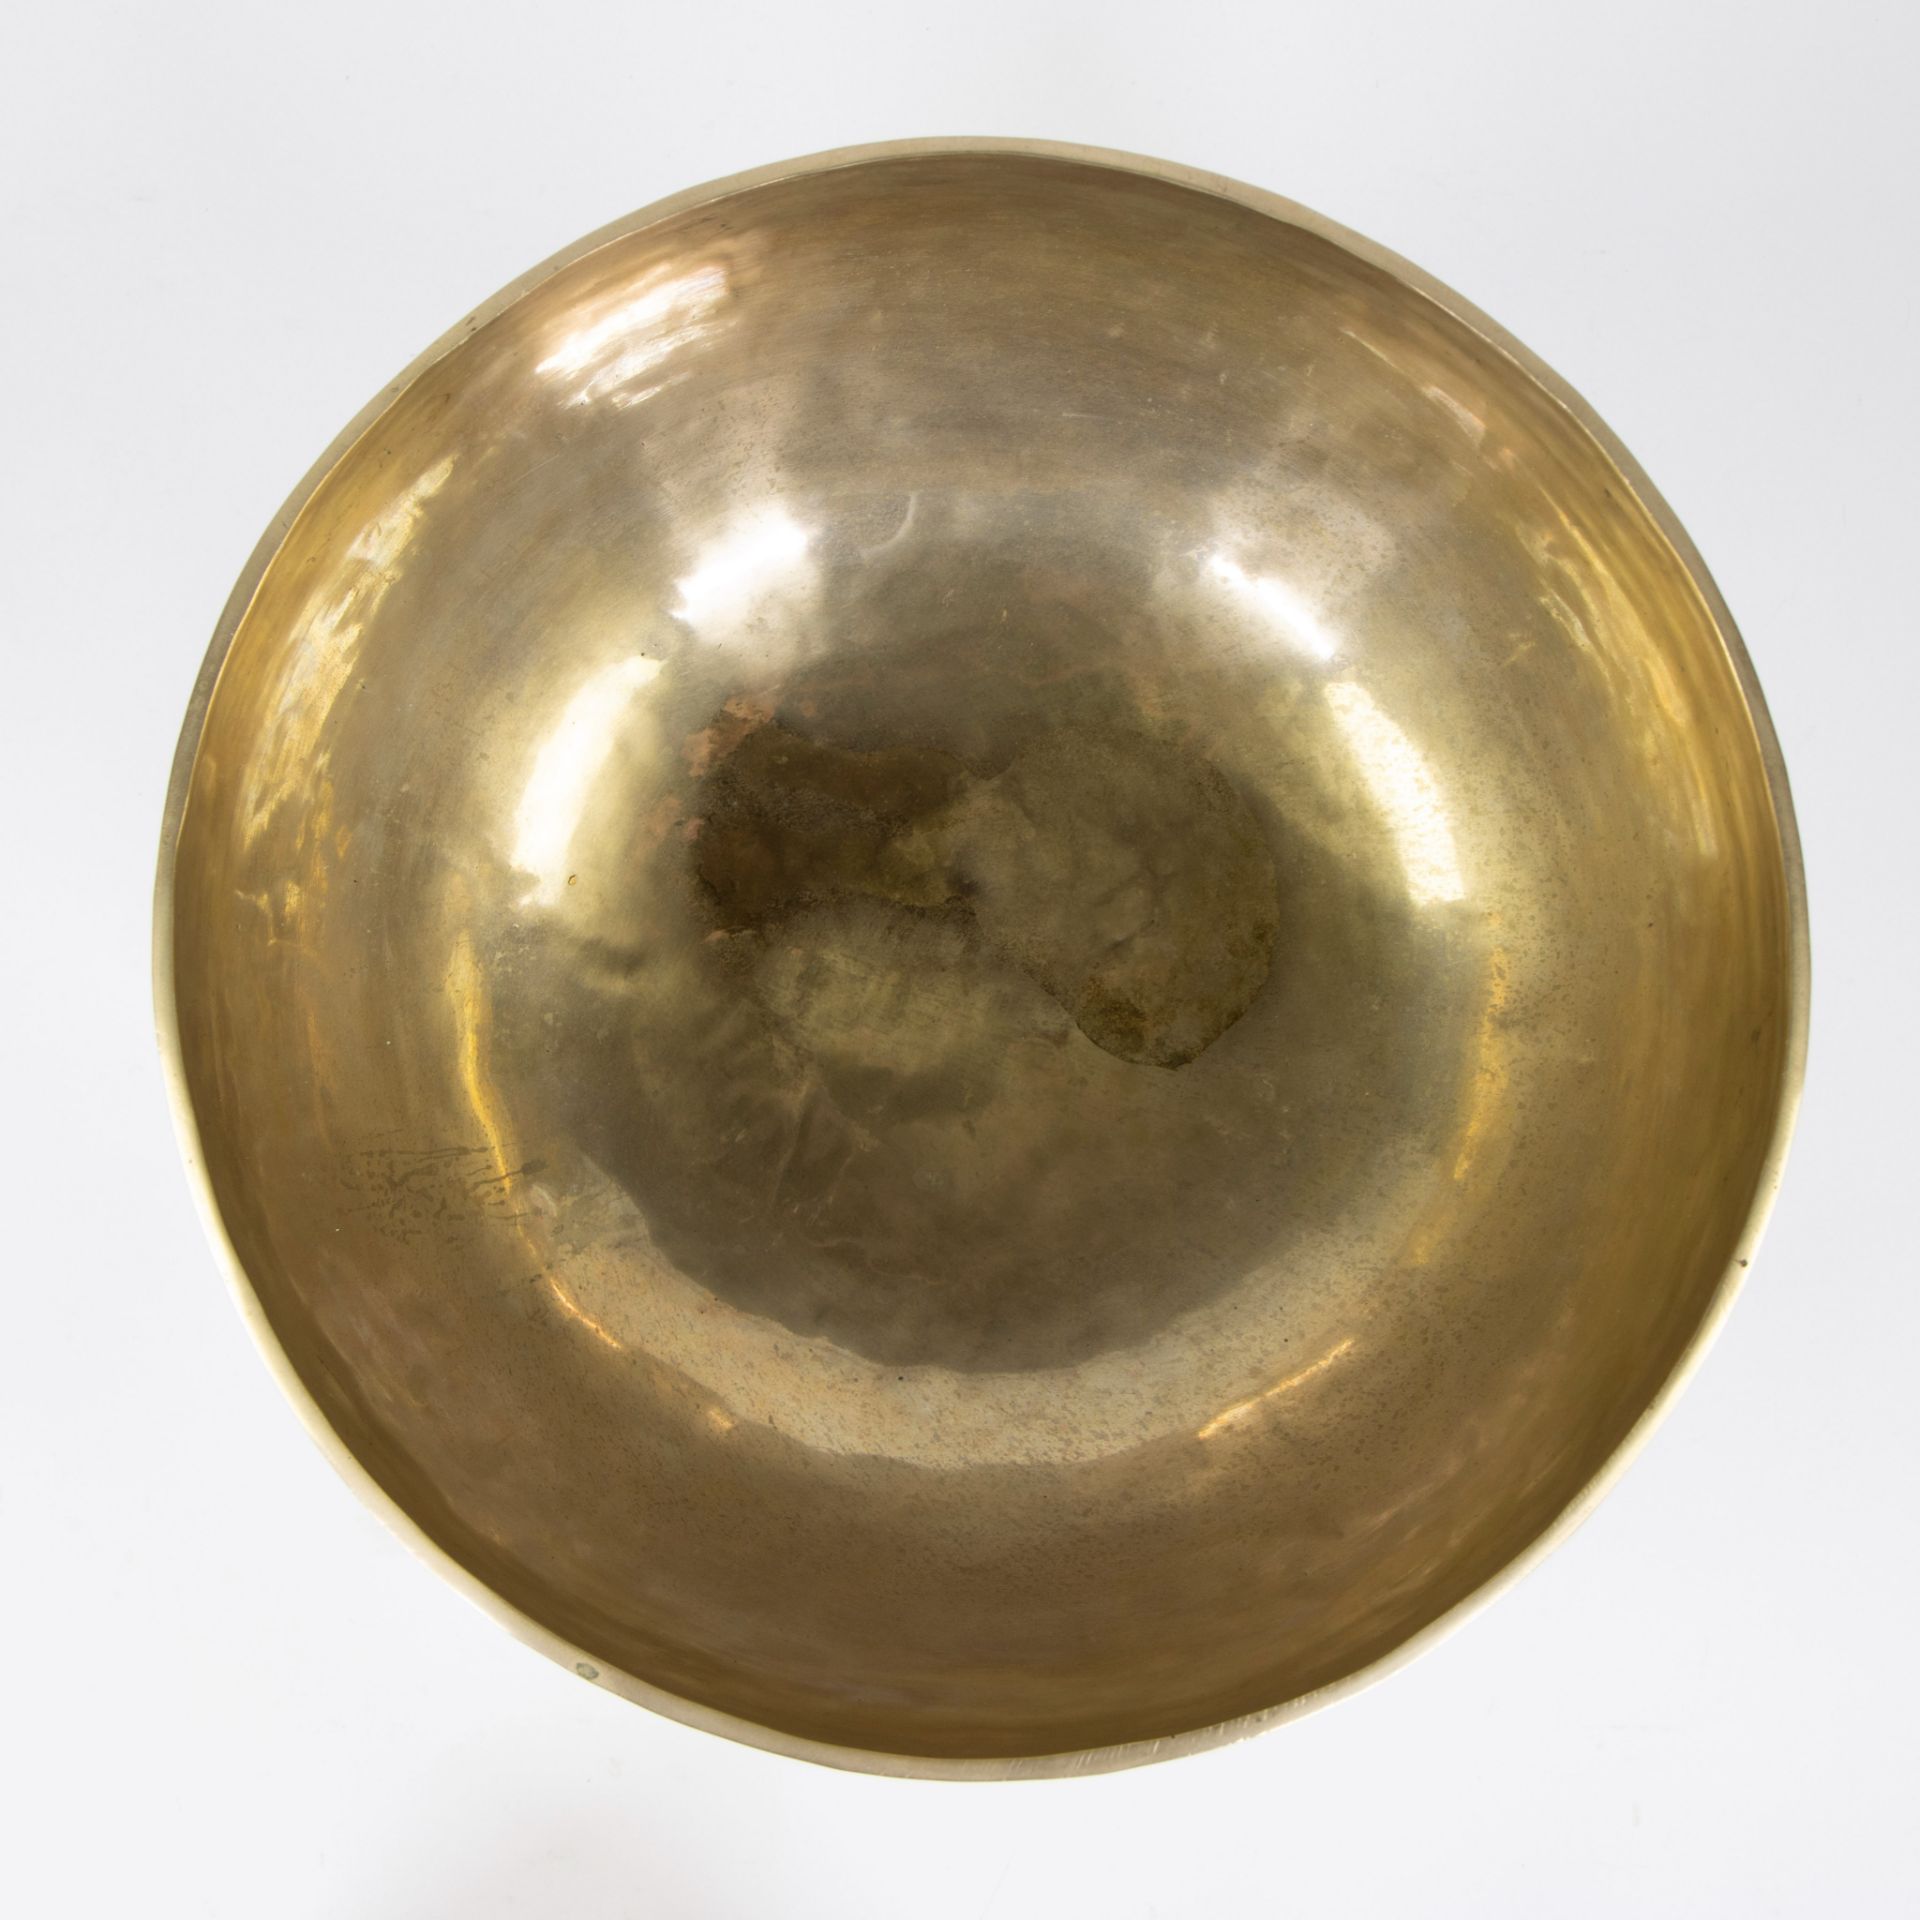 Tibetan singing bowl/gong. - Image 3 of 4